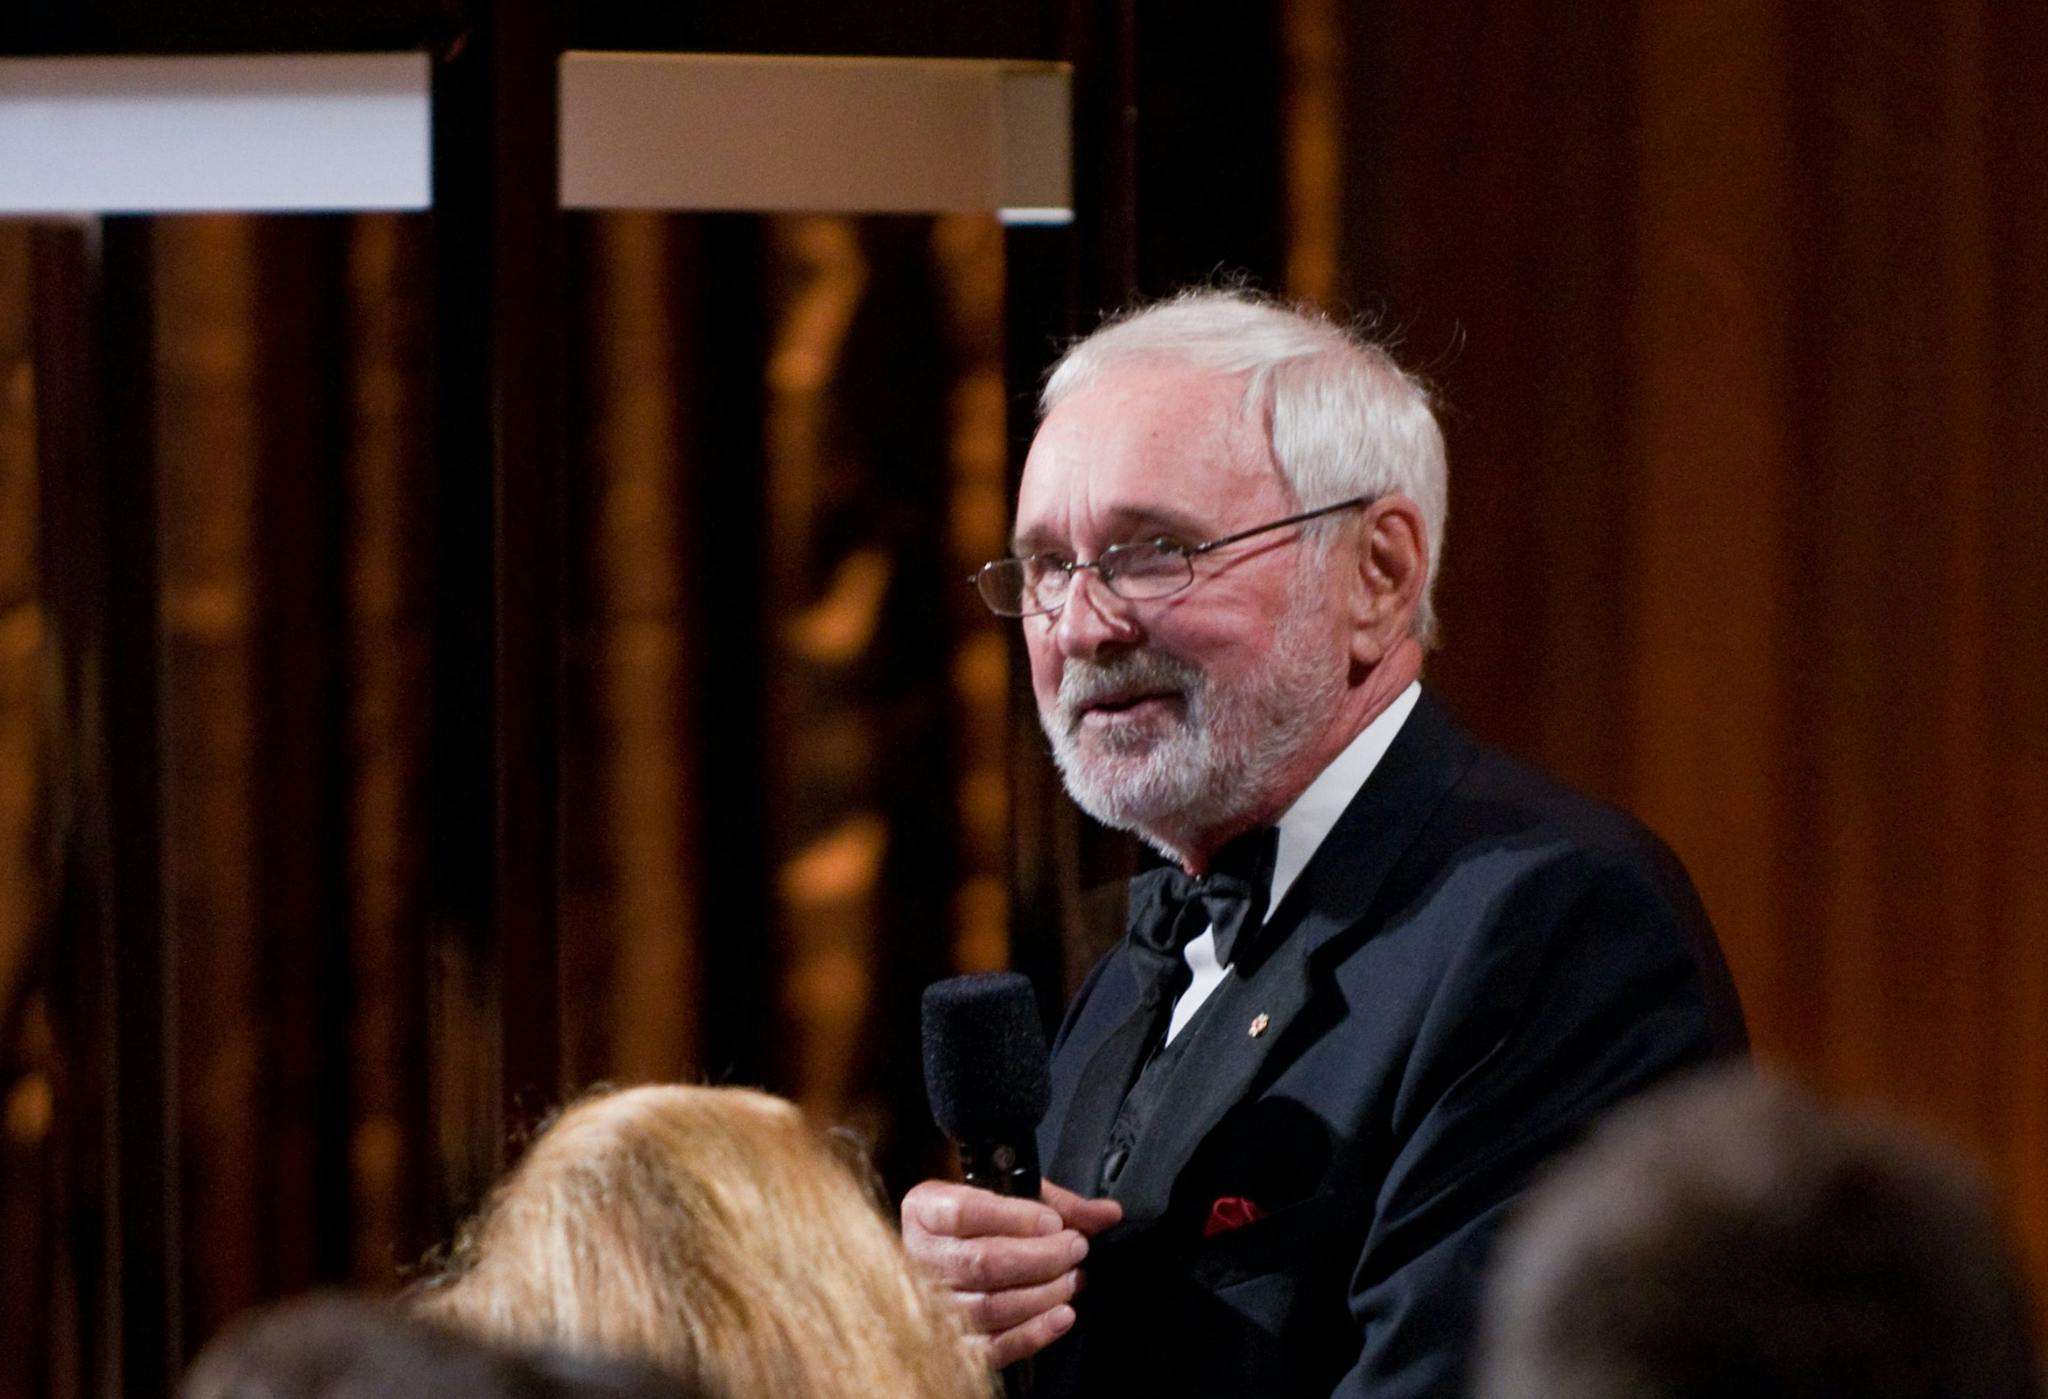 El director Norman Jewison, fallecido este lunes a los 97 años de edad, durante la gala de entrega de los Governors Awards de 2009